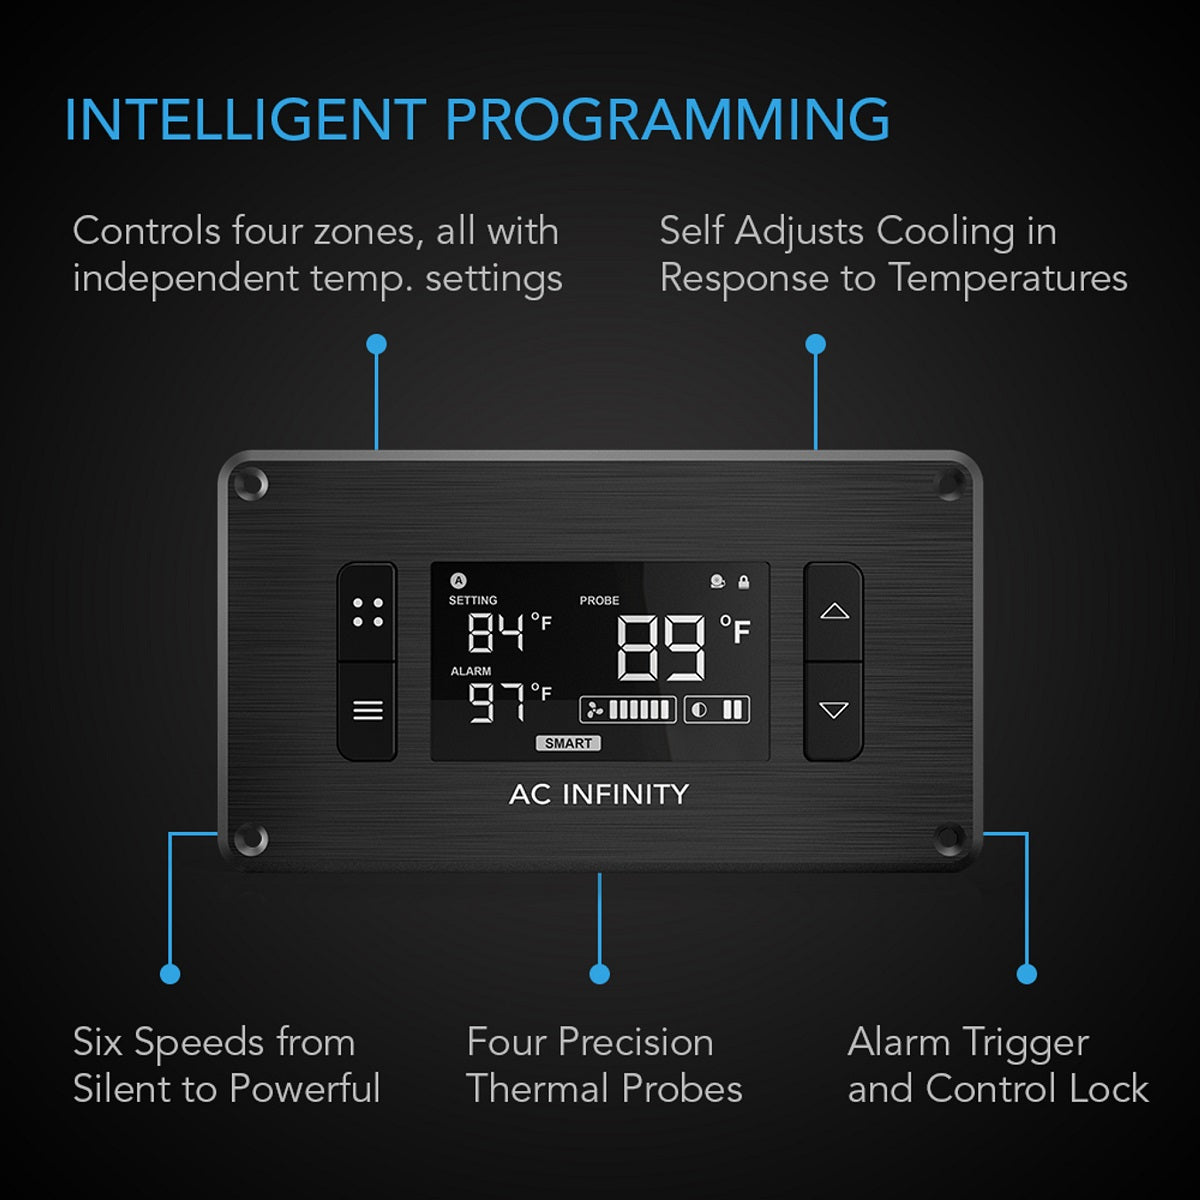 AC Infinity Controller 8 - Controla temperatura e umidade em 4 zonas